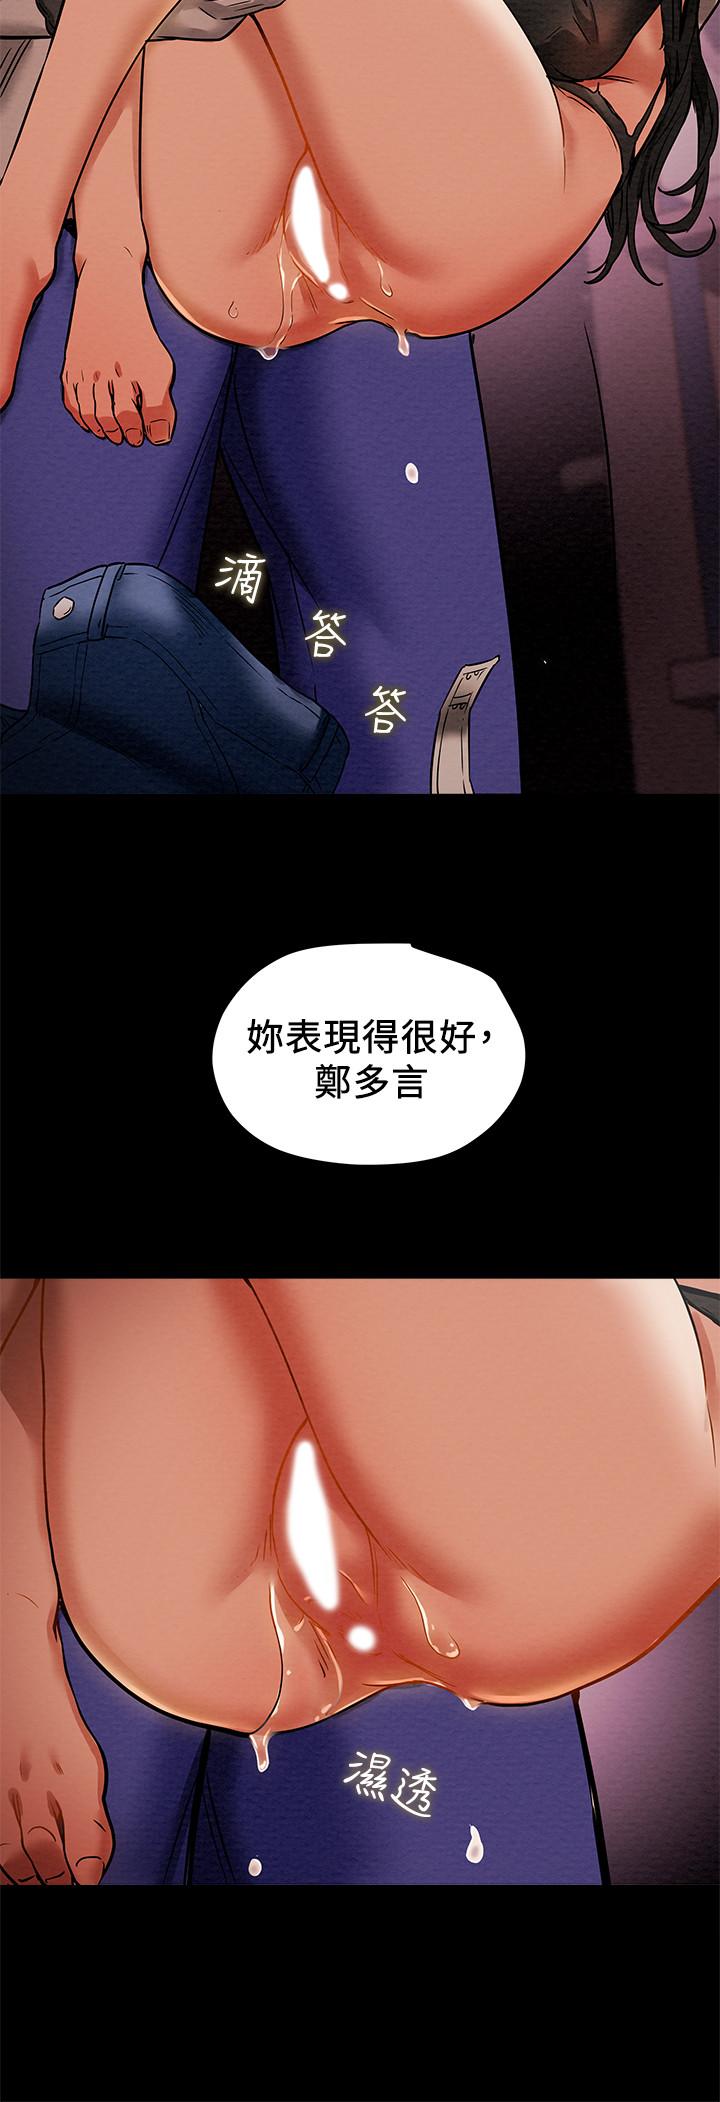 韩国污漫画 純情女攻略計劃 第14话-这就是女大生的味道 31